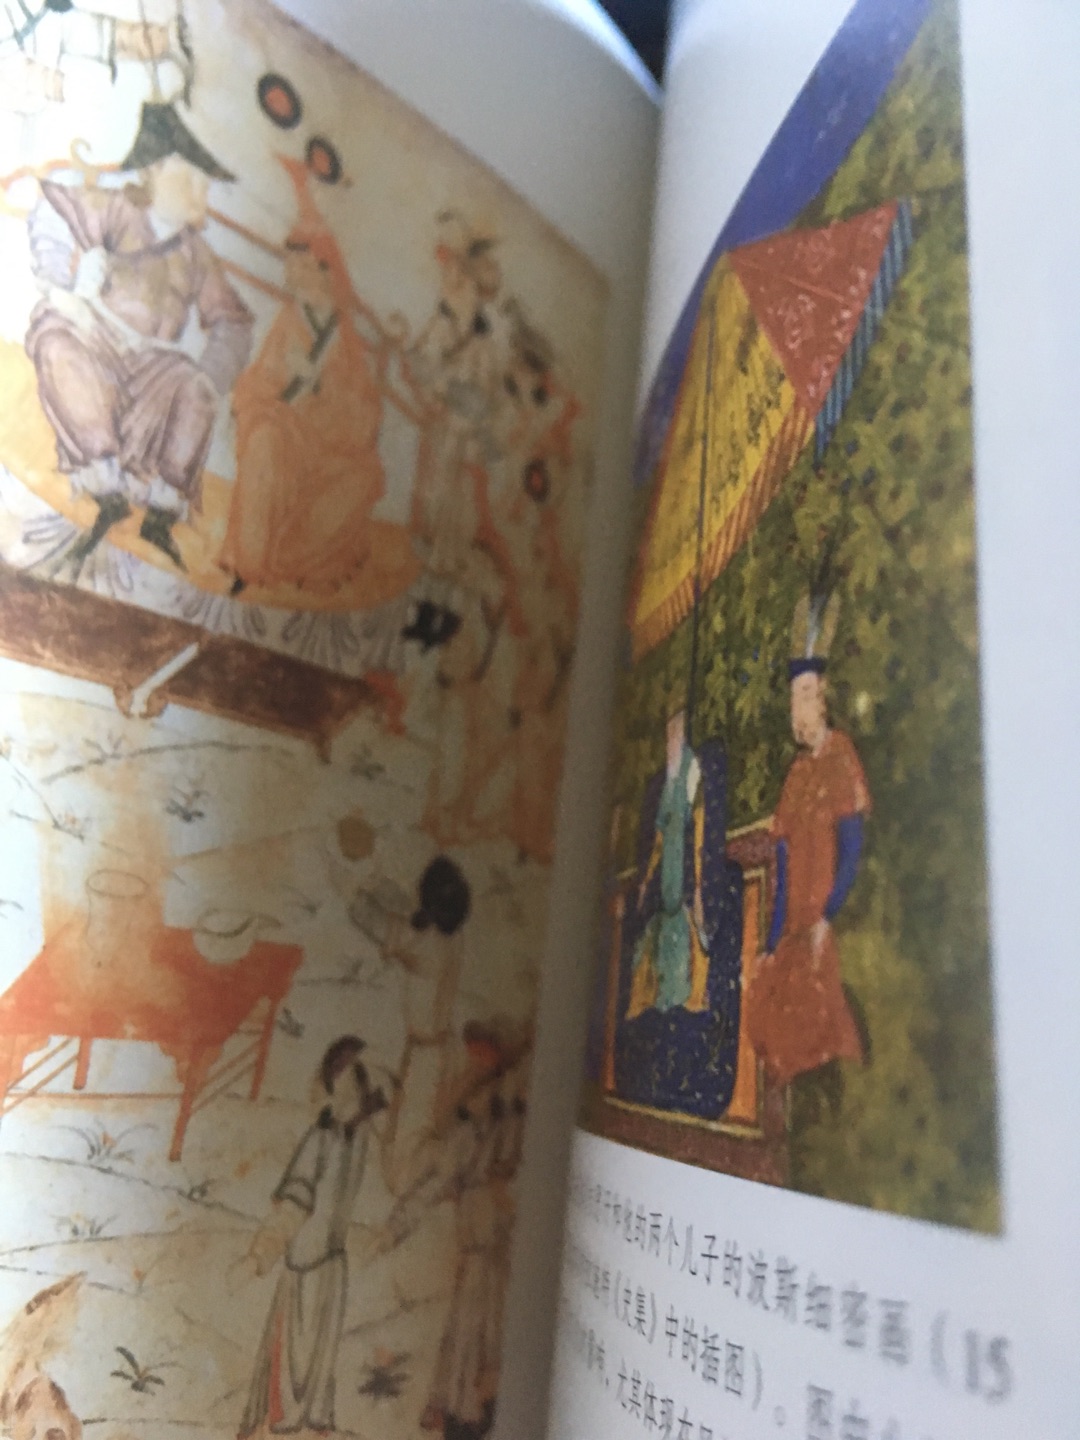 蒙古帝国的历史其实我们好像都知道，但是又感到有些模糊，这本书对这段历史有了比较深刻的阐述，很值得一读！